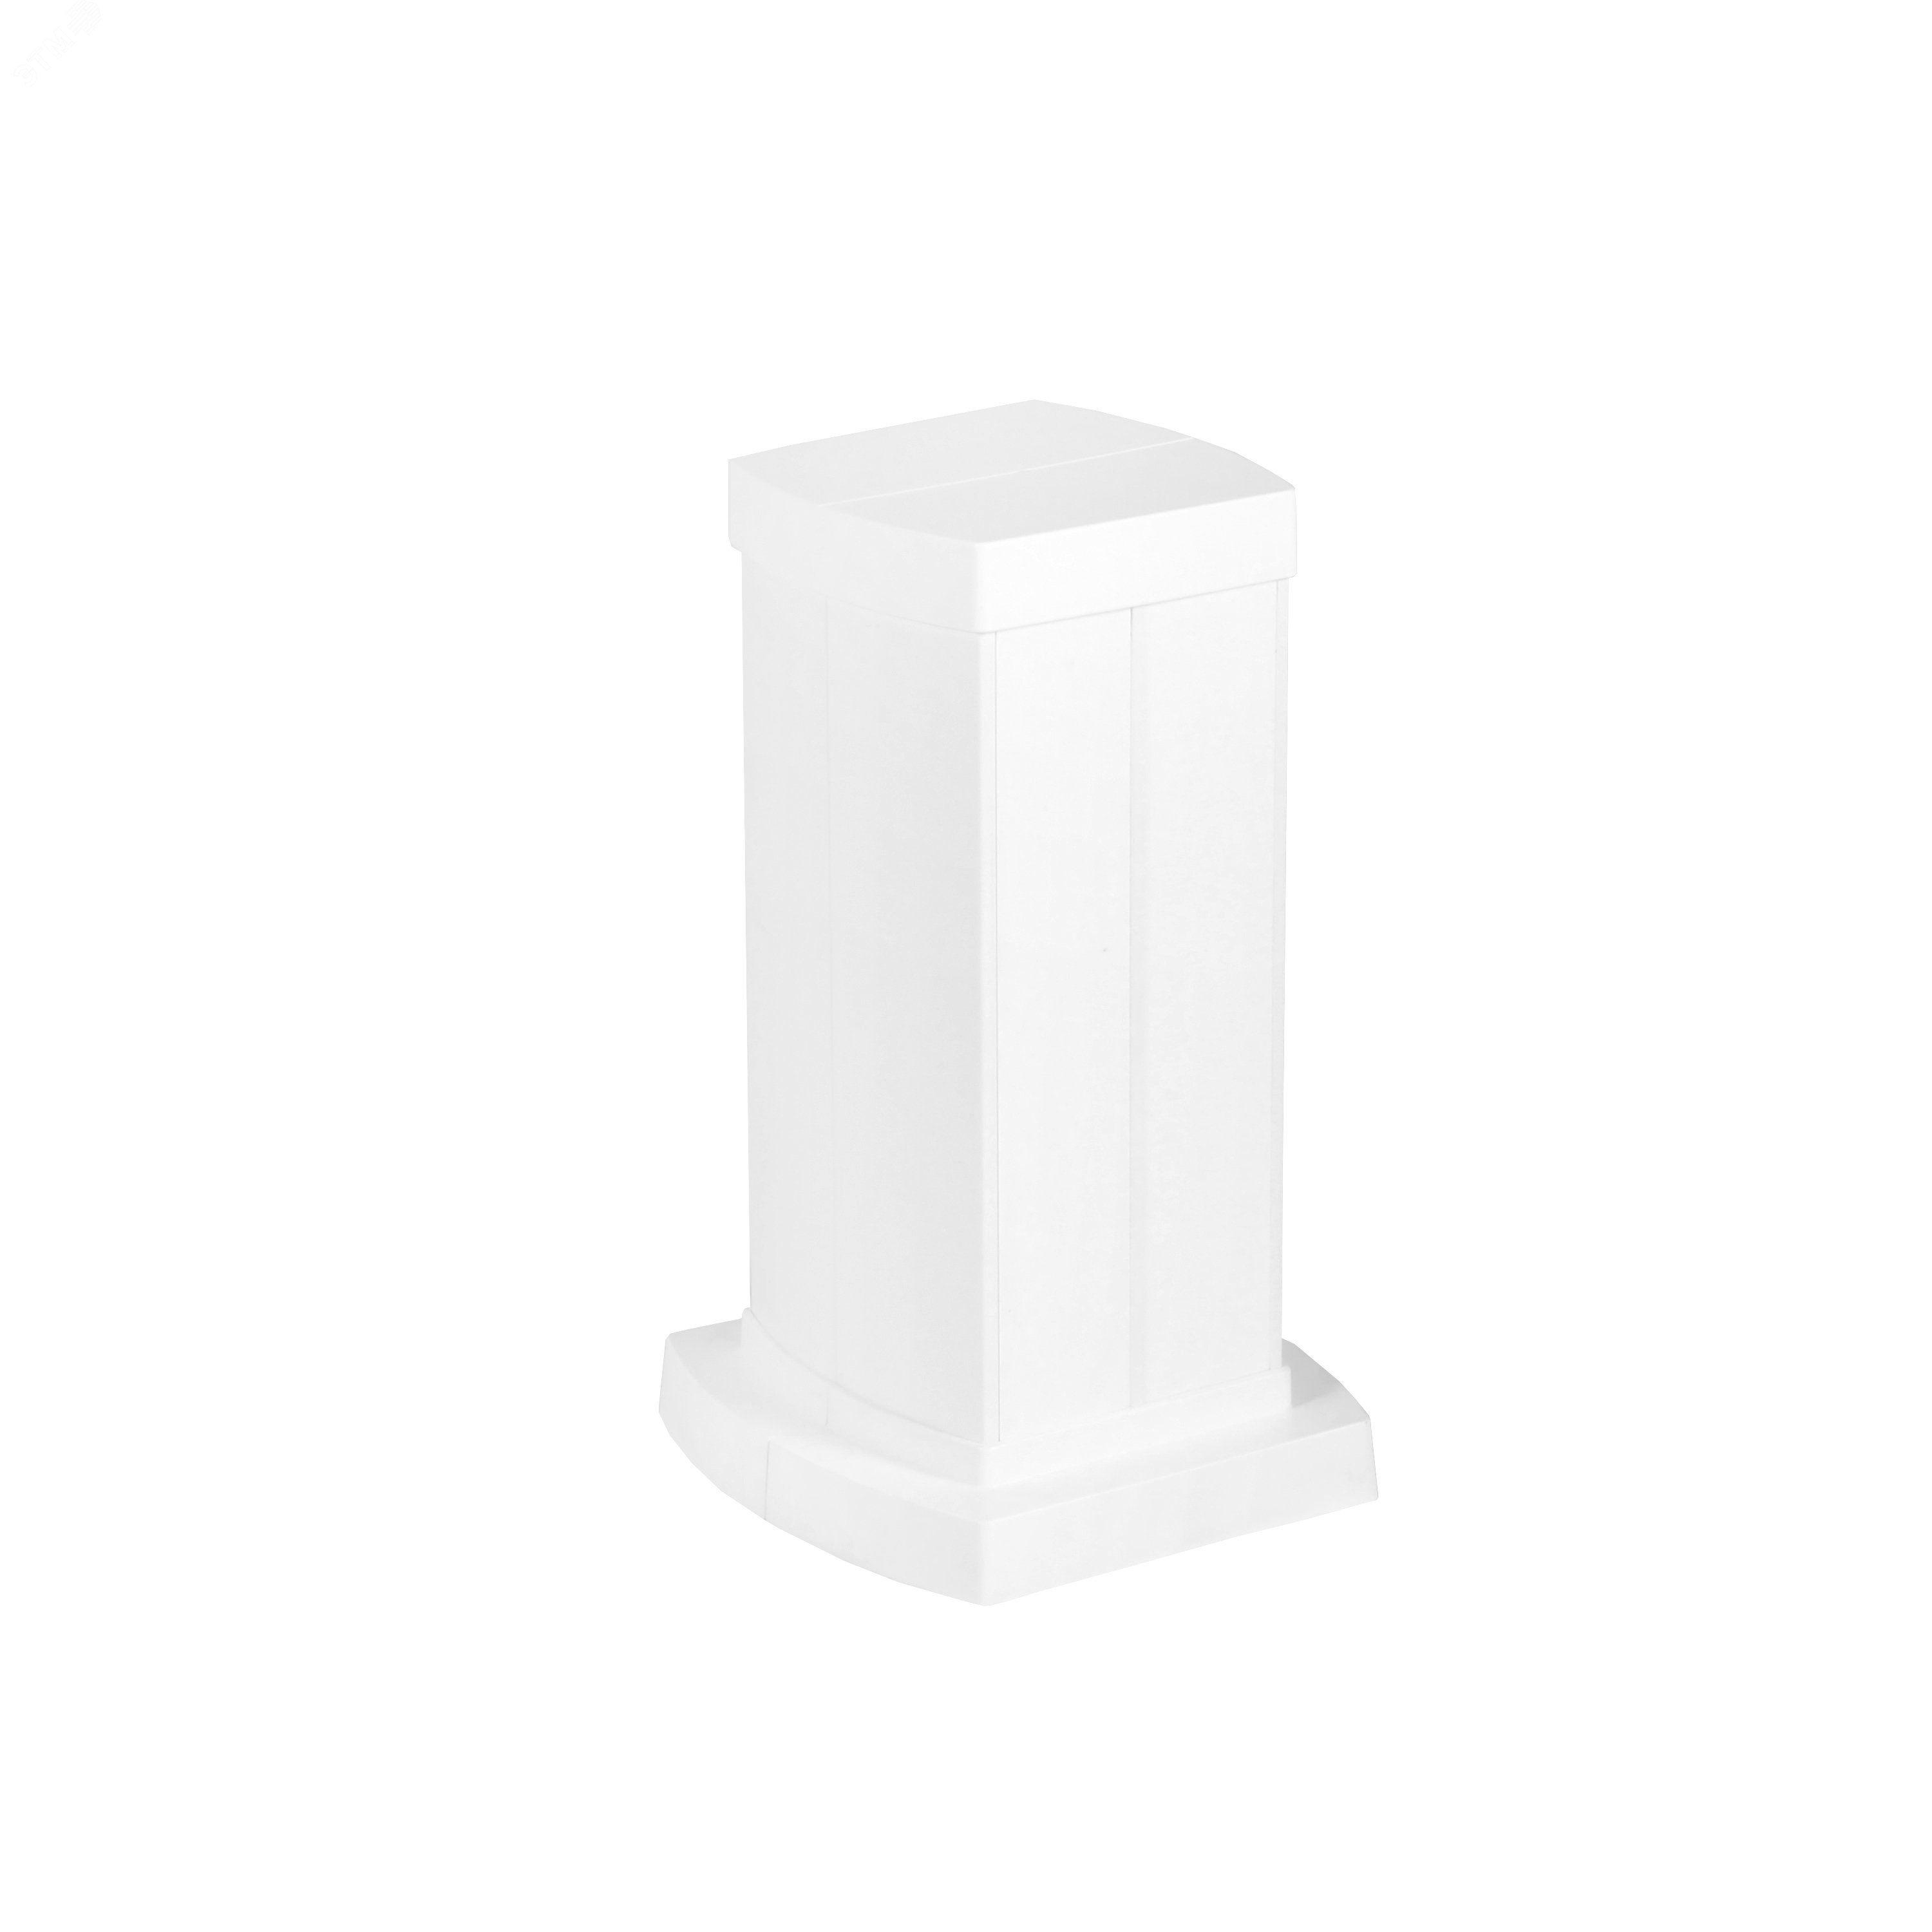 Snap-On мини-колонна алюминиевая с крышкой из пластика 4 секции, высота 0,3 метра, цвет белый 653040 Legrand - превью 2